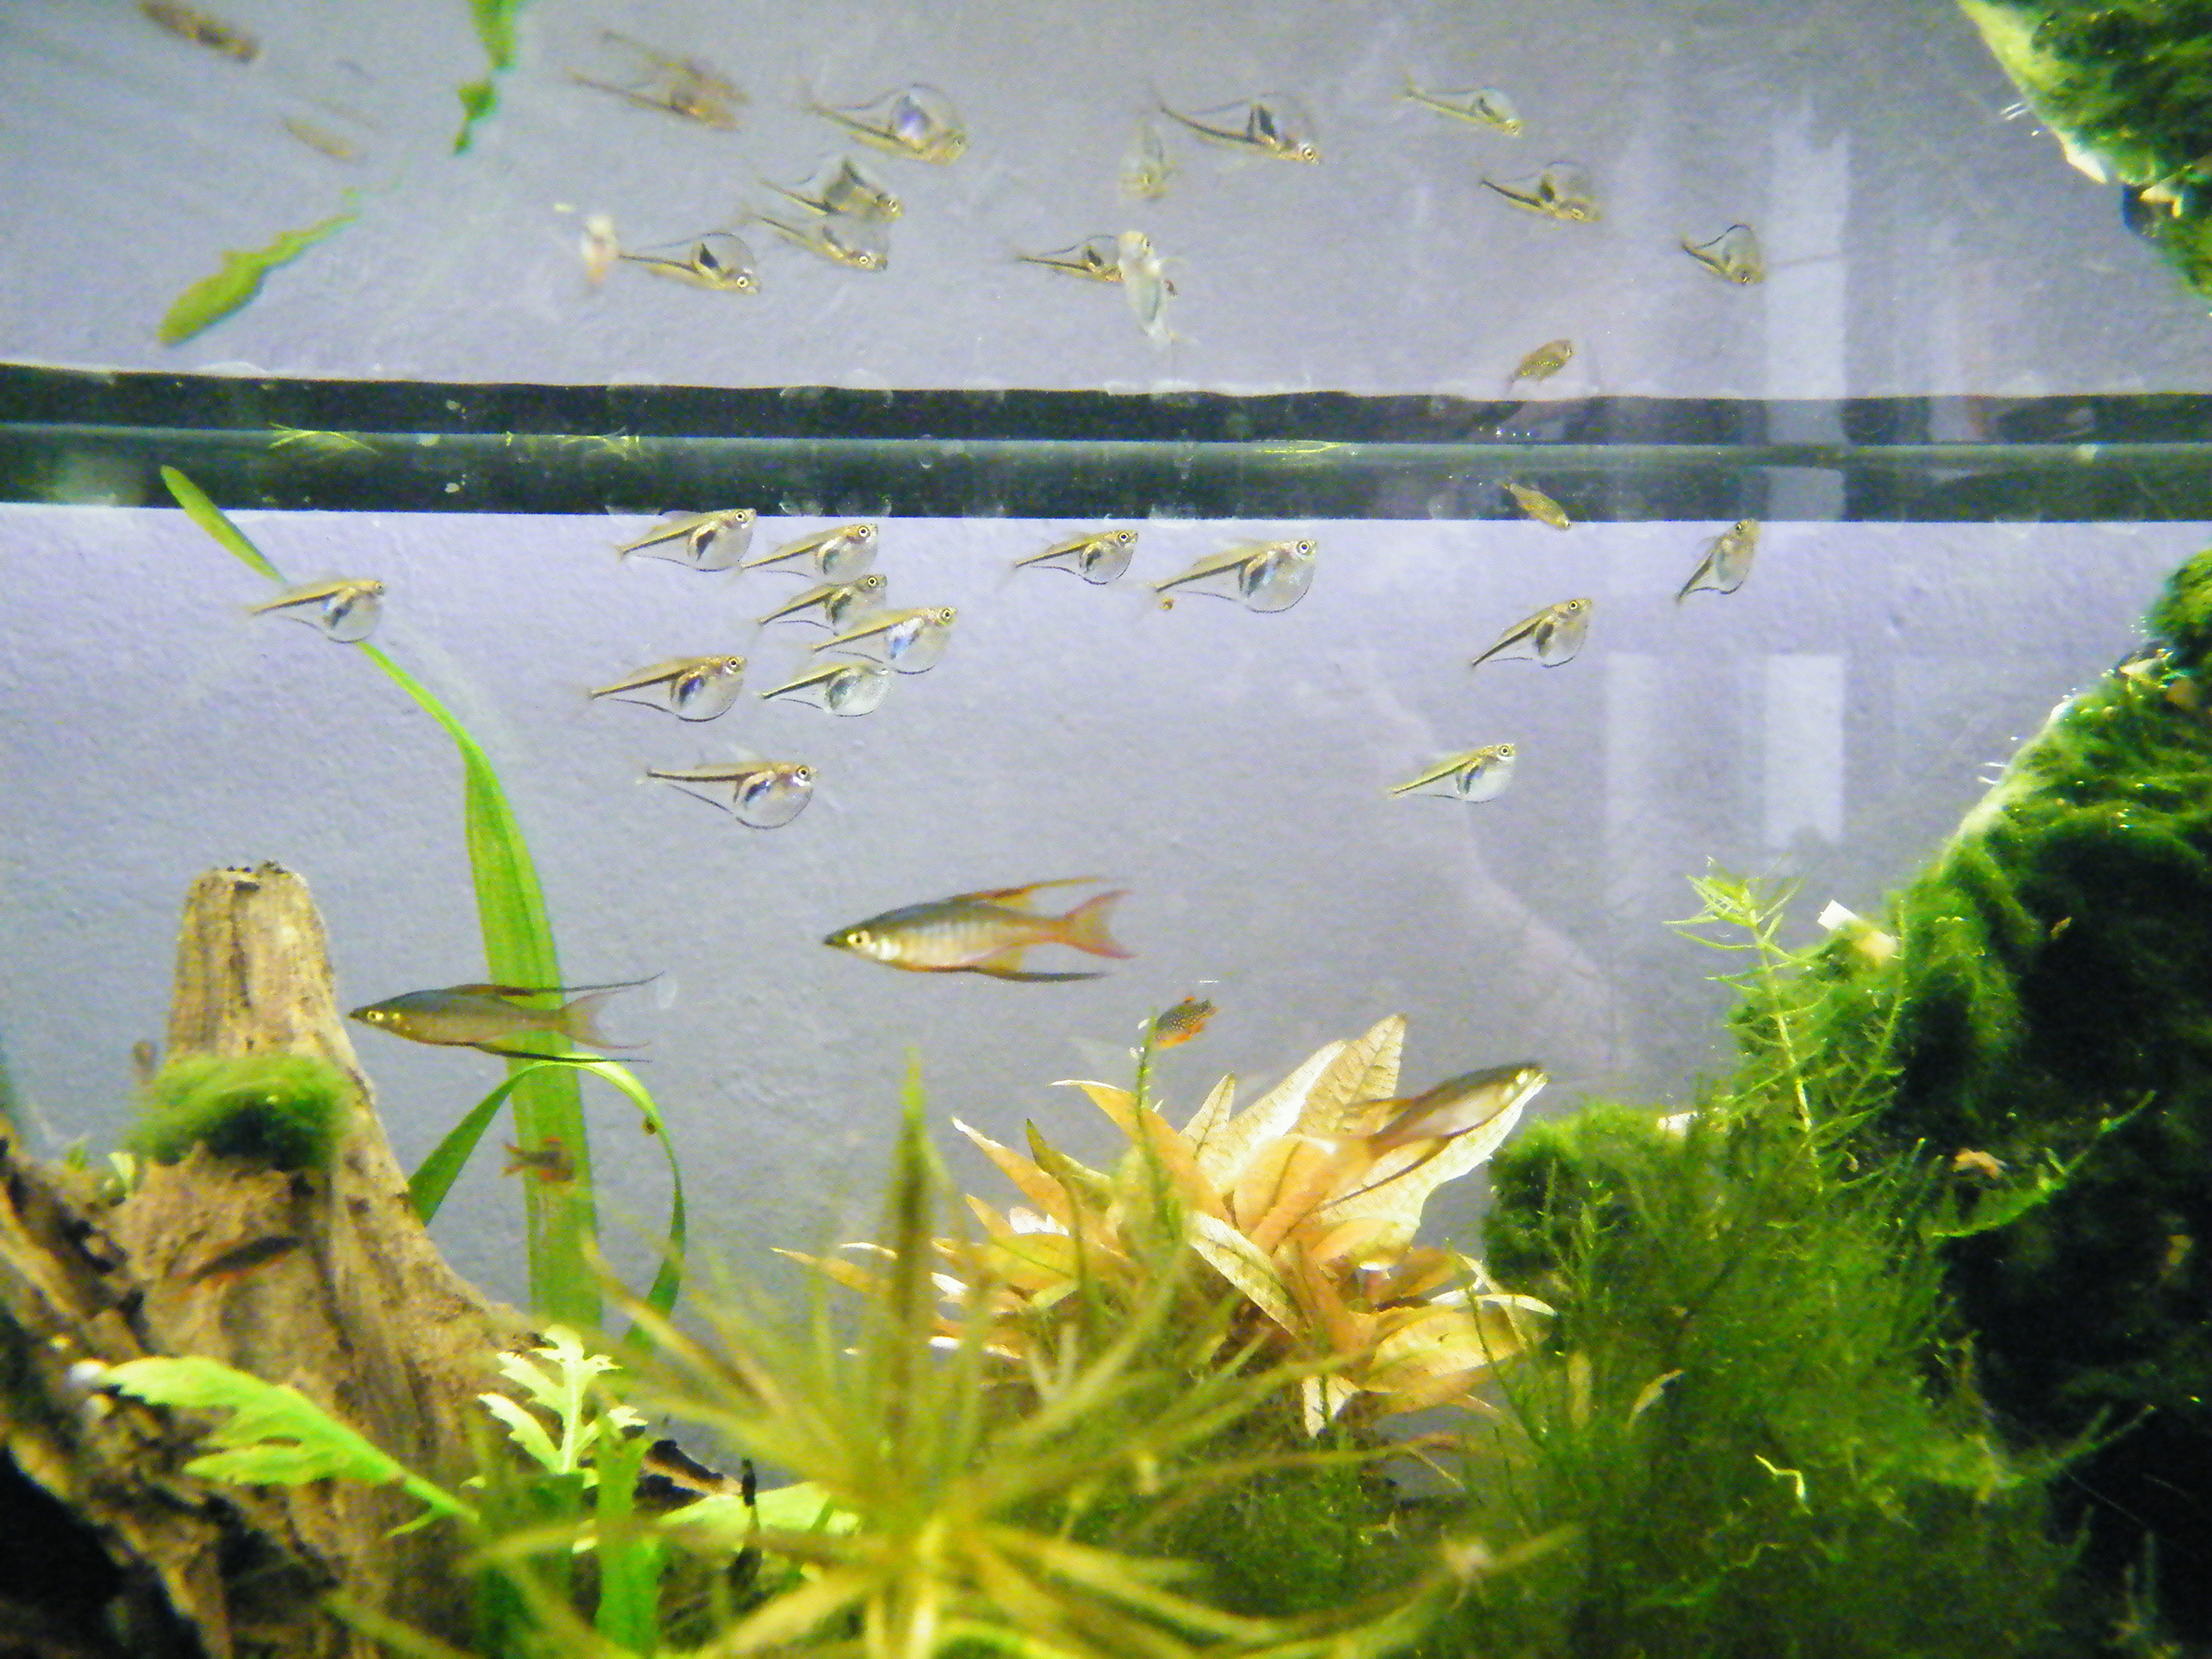 Carnegiella myersi Zwerg-Glasbeilbauchfisch